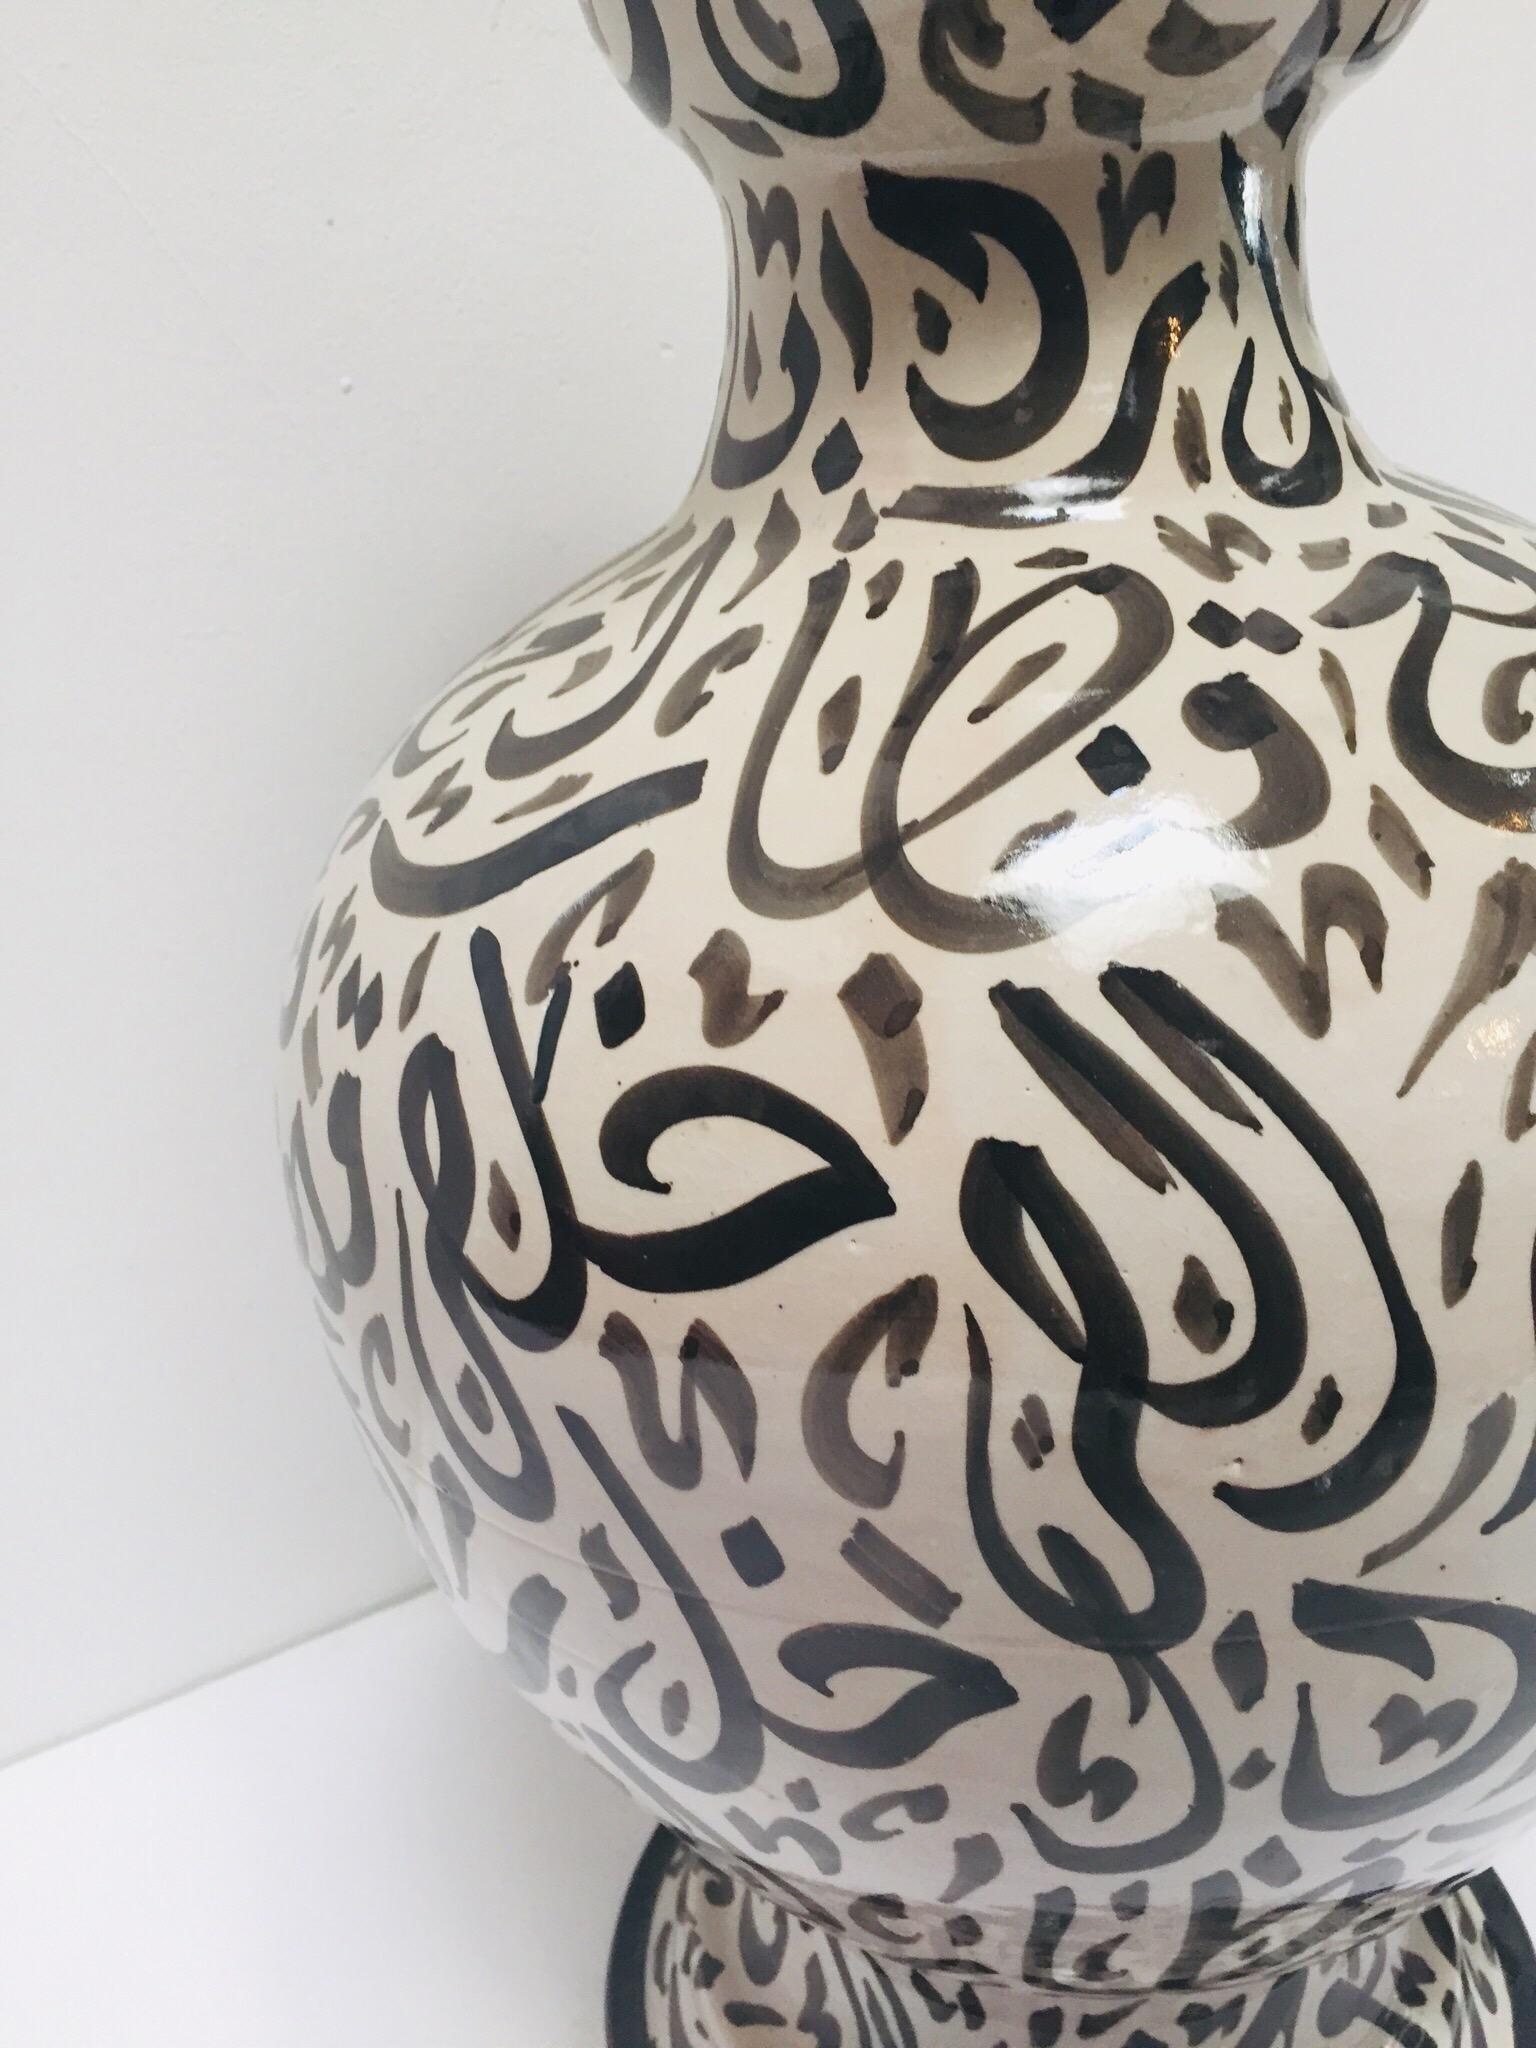 Large Moorish Glazed Ceramic Vase with Arabic Calligraphy Black Writing Fez For Sale 8